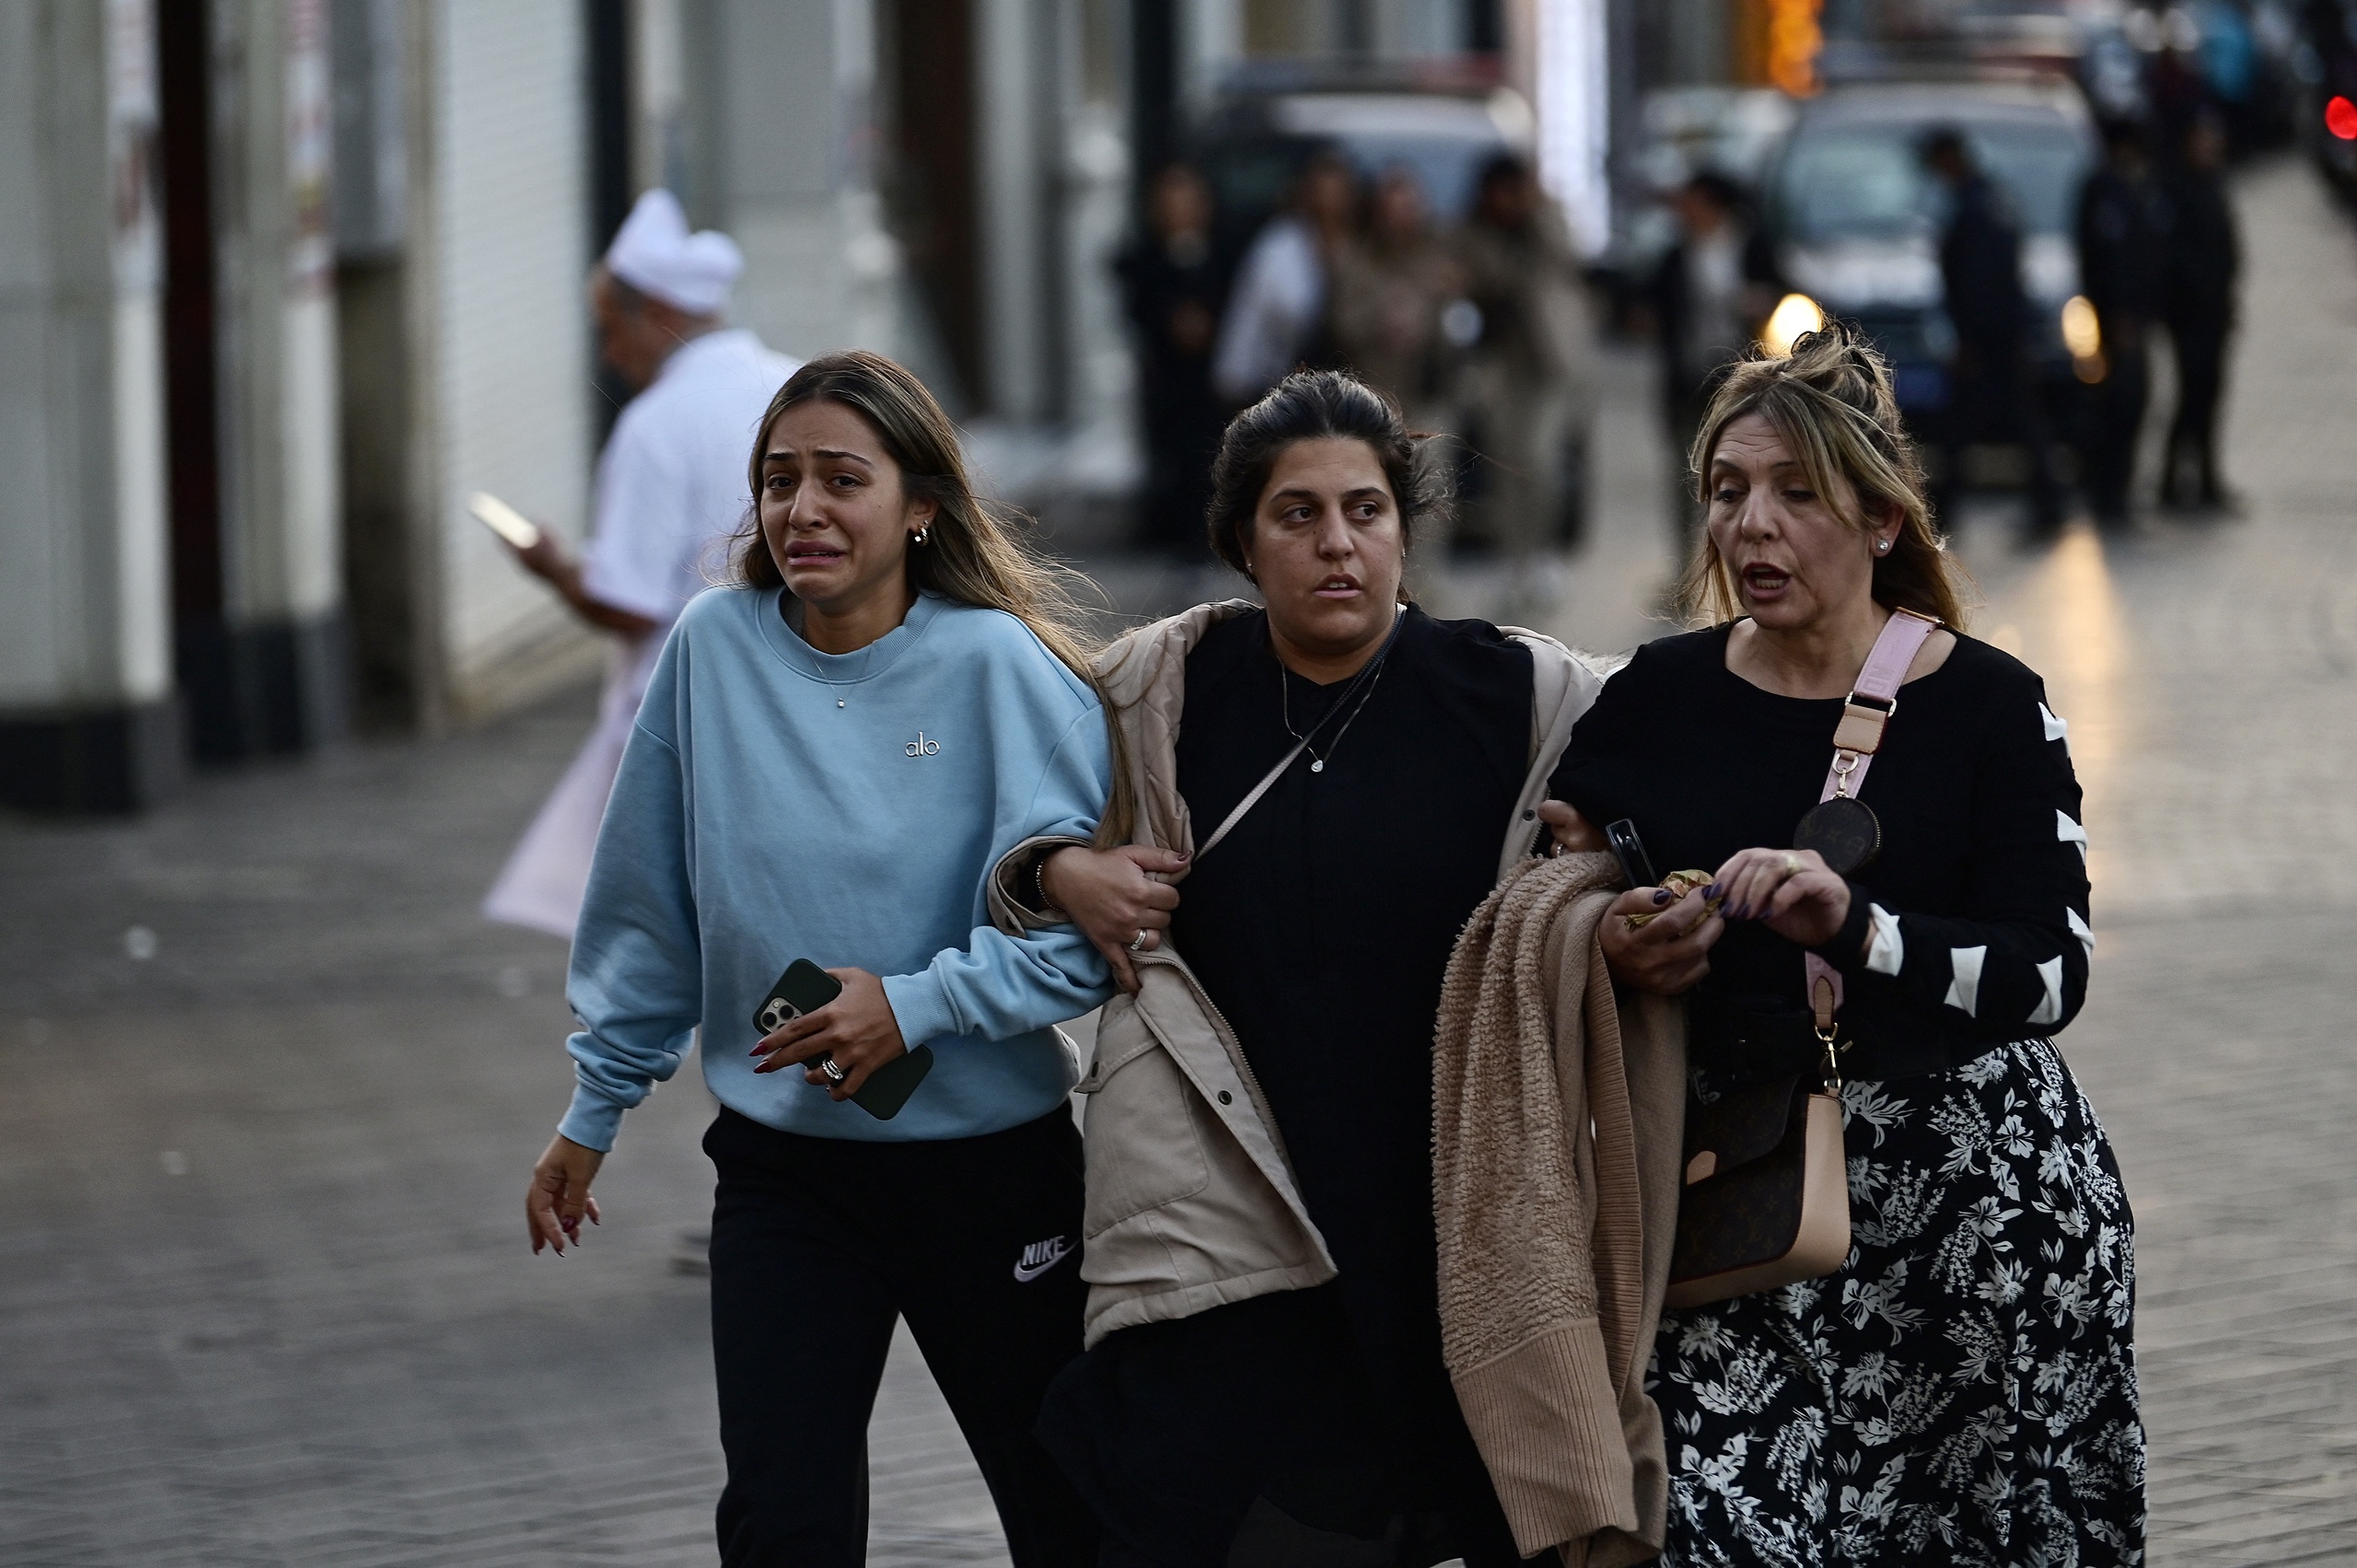 De aanslag die in de Turkse stad Istanbul zondag zes doden eiste is uitgevoerd door de Turks-Koerdische organisatie PKK, zegt de Turkse minister van Binnenlandse Zaken. Bij de explosie in het centrum van Istanbul zondagmiddag vielen ook 81 gewonden. De vermoedelijke dader van de aanslag is inmiddels ingerekend, meldt binnenlandminister Suleyman Soylu.